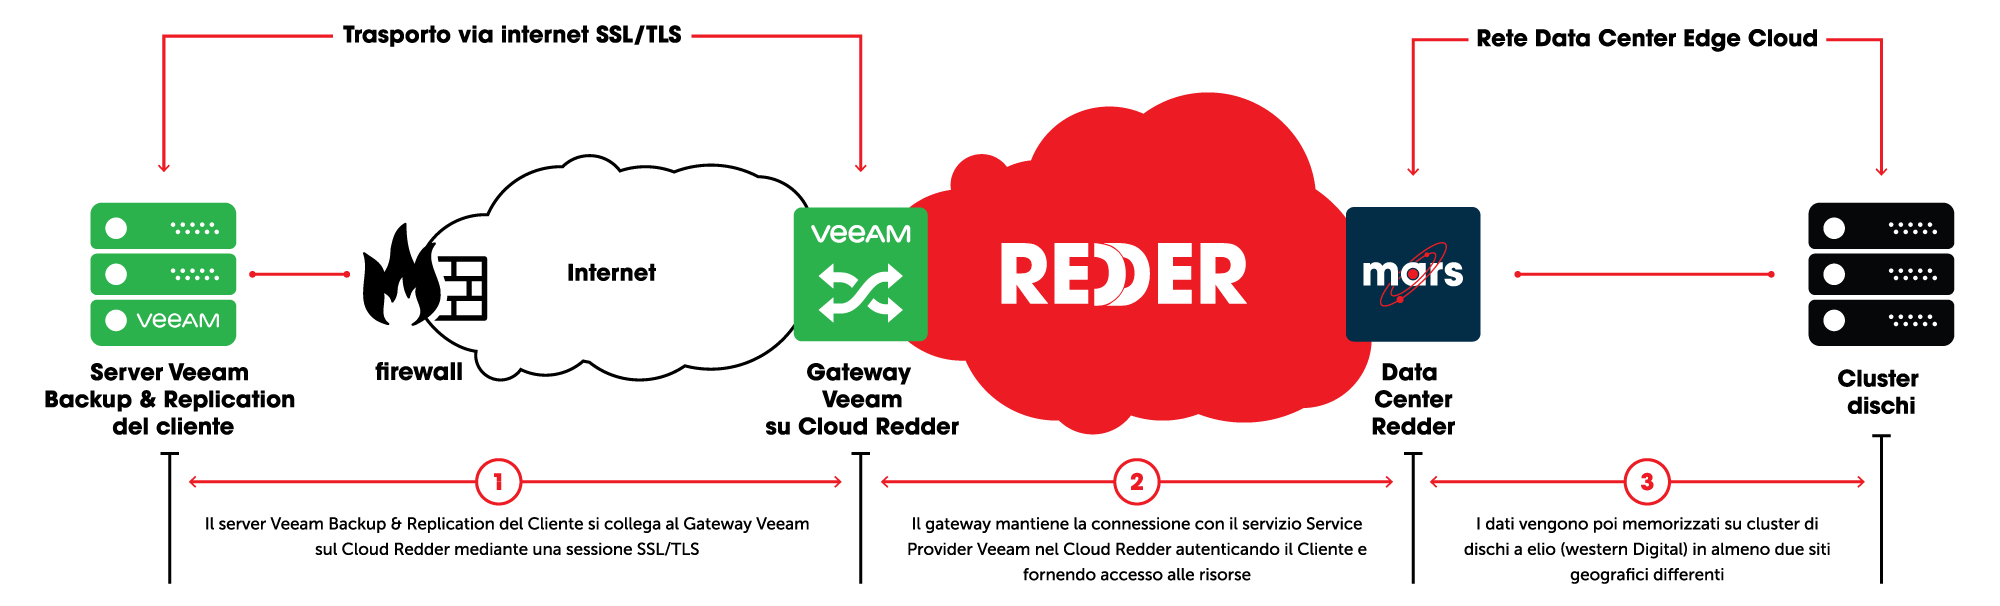 REDDER - Microsoft Teams